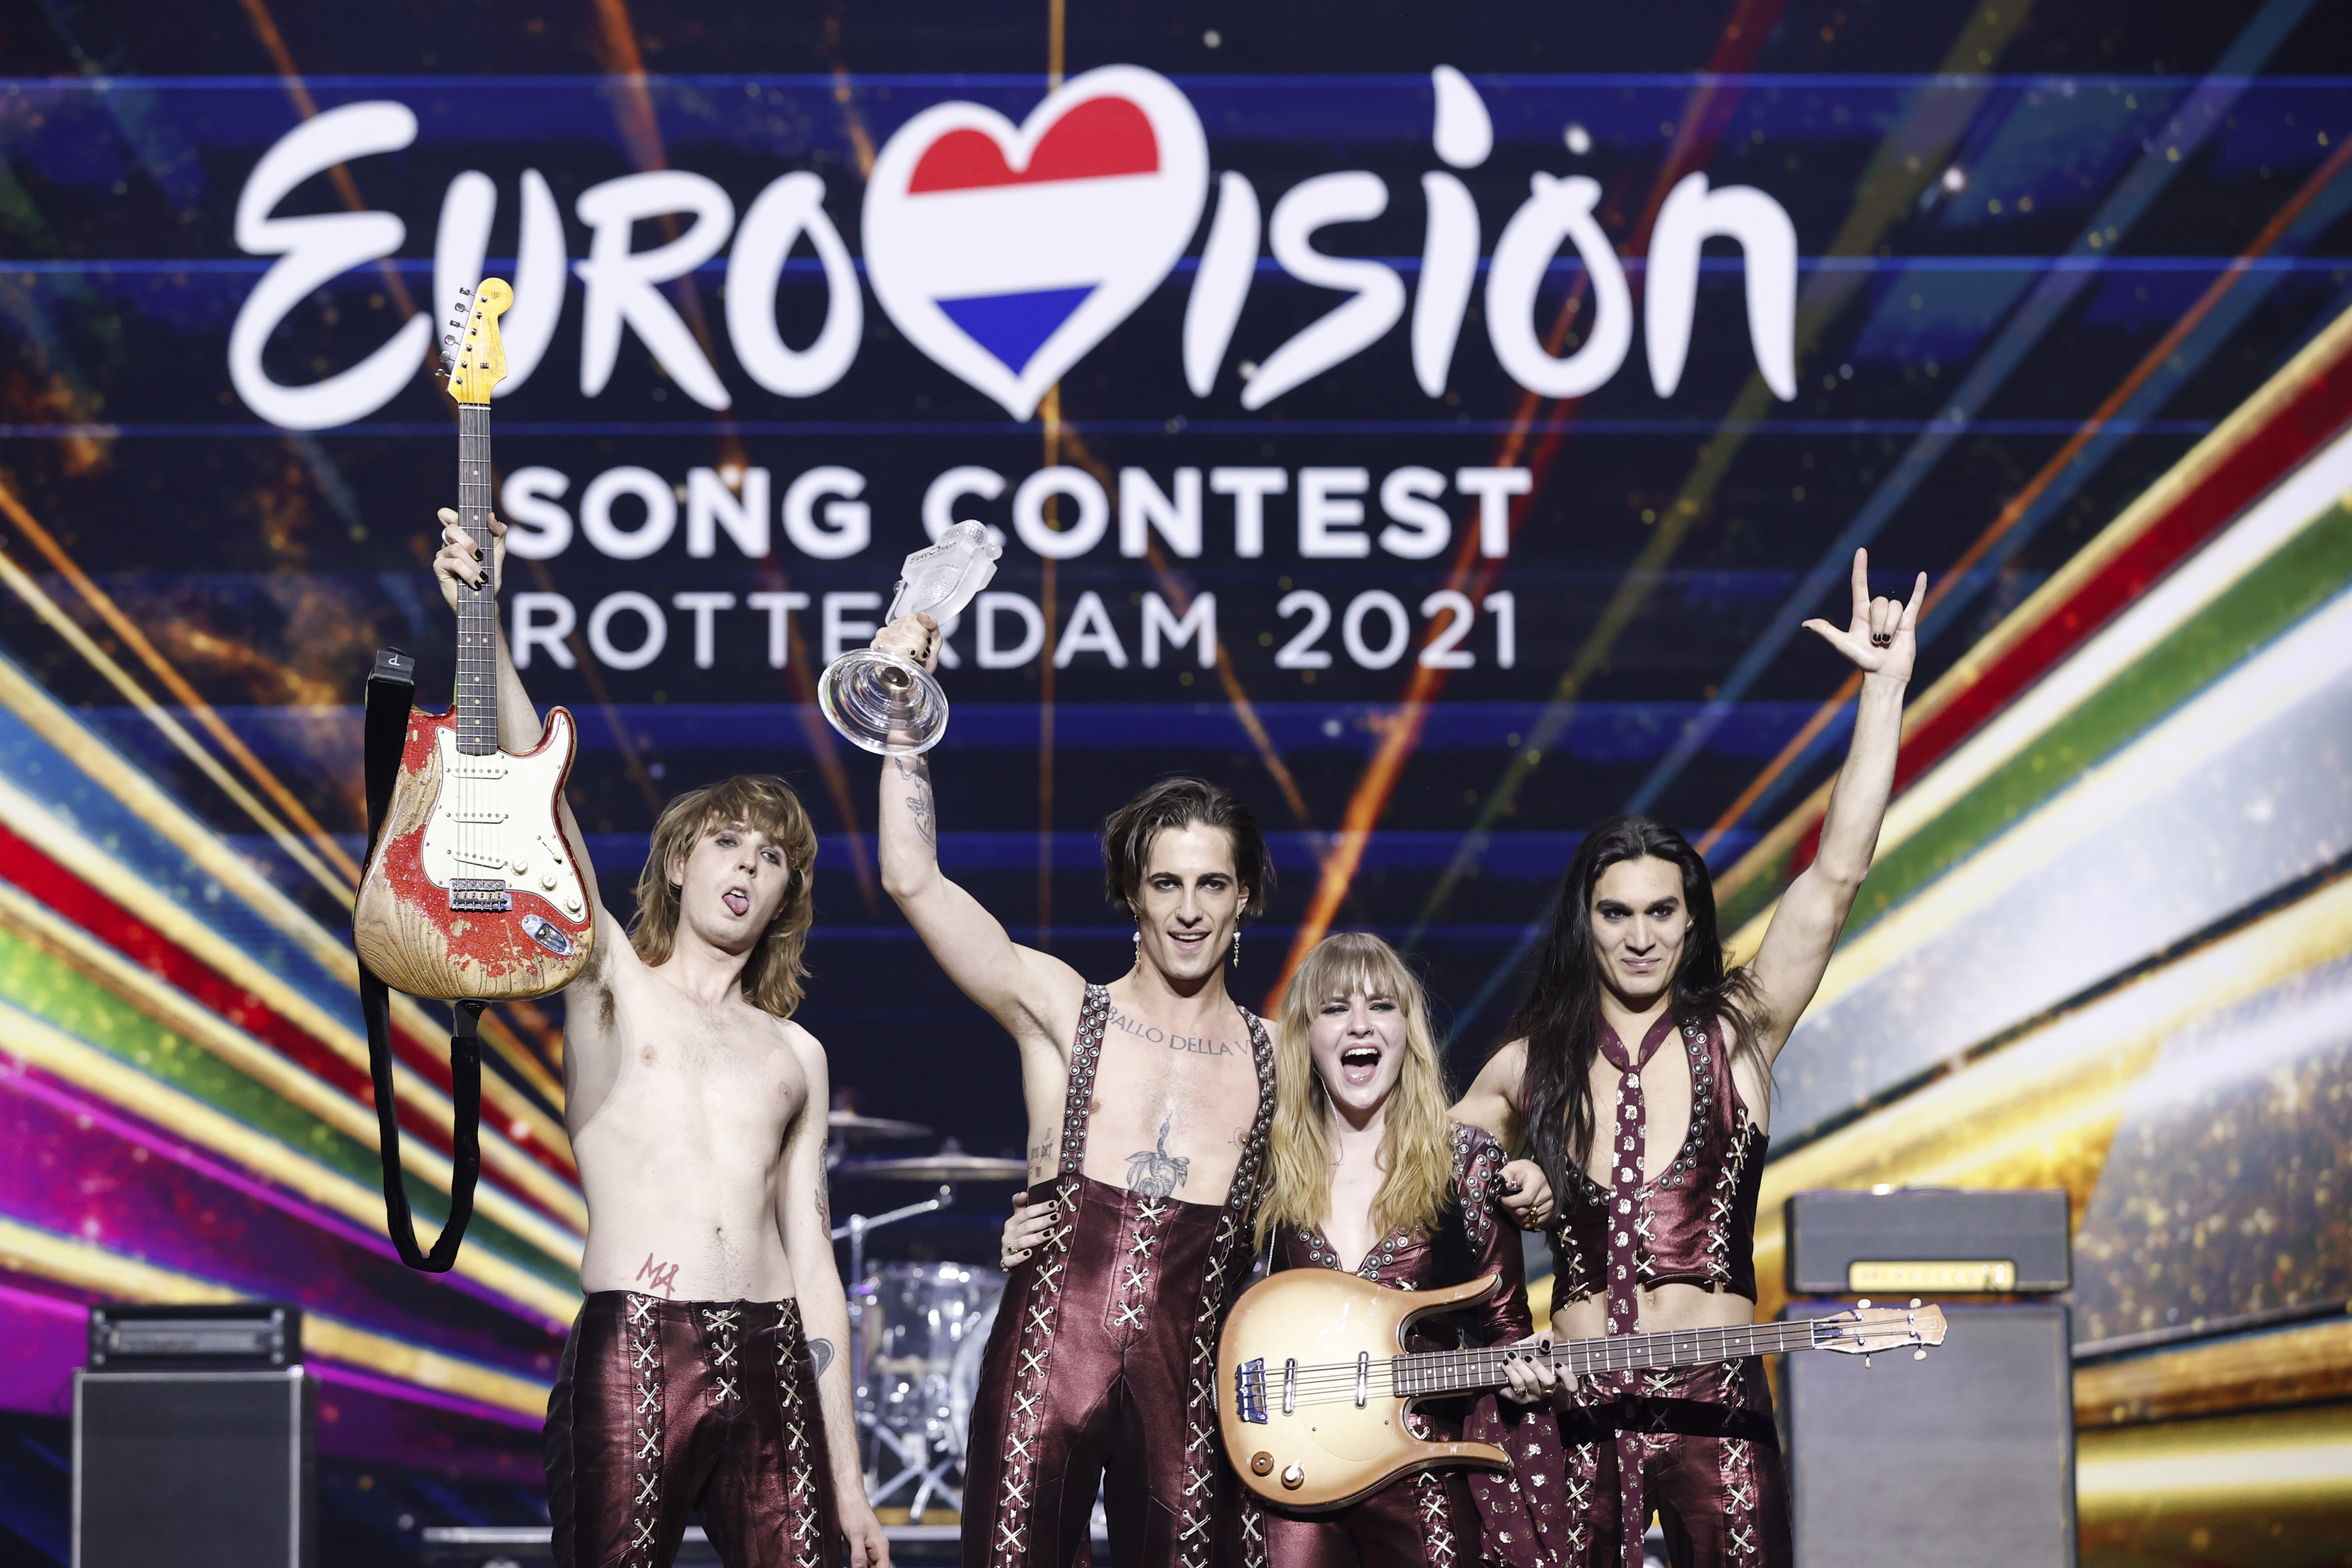 Update: Russland vom Eurovision Song Contest ausgeschlossen, Finnland nimmt teil